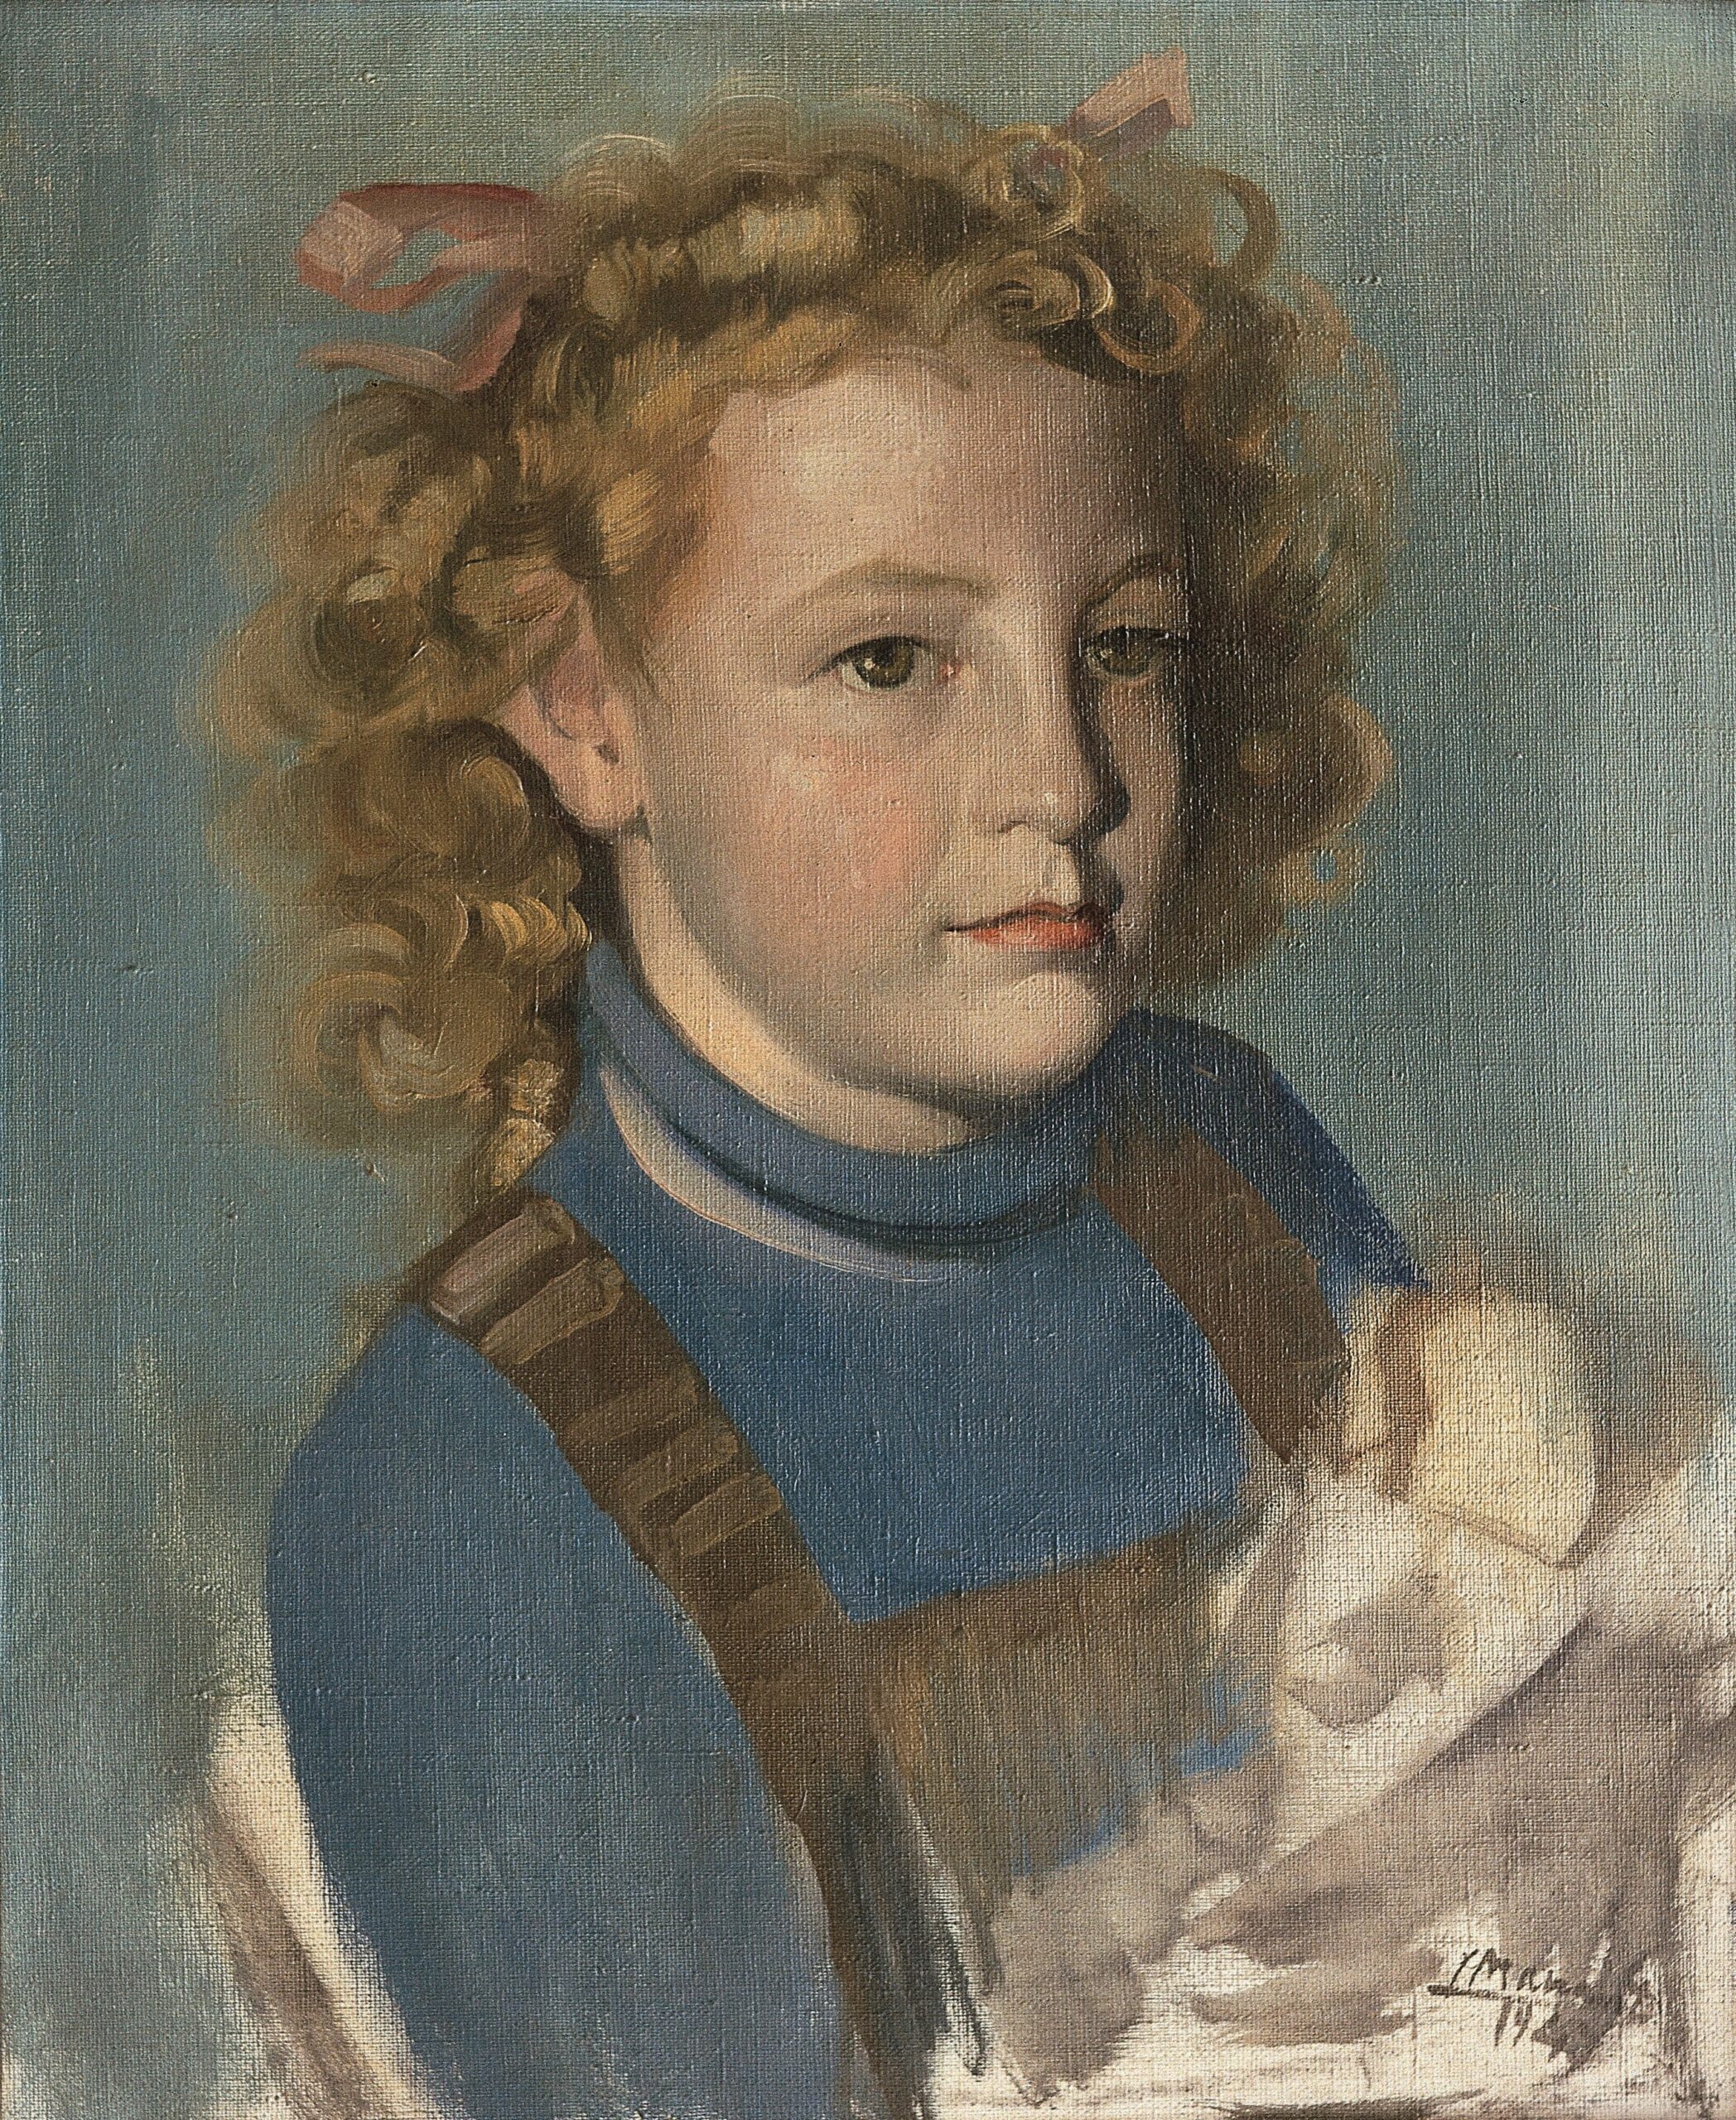 Pintura de José Manaut titulada Stella, 1943. Óleo sobre lienzo.